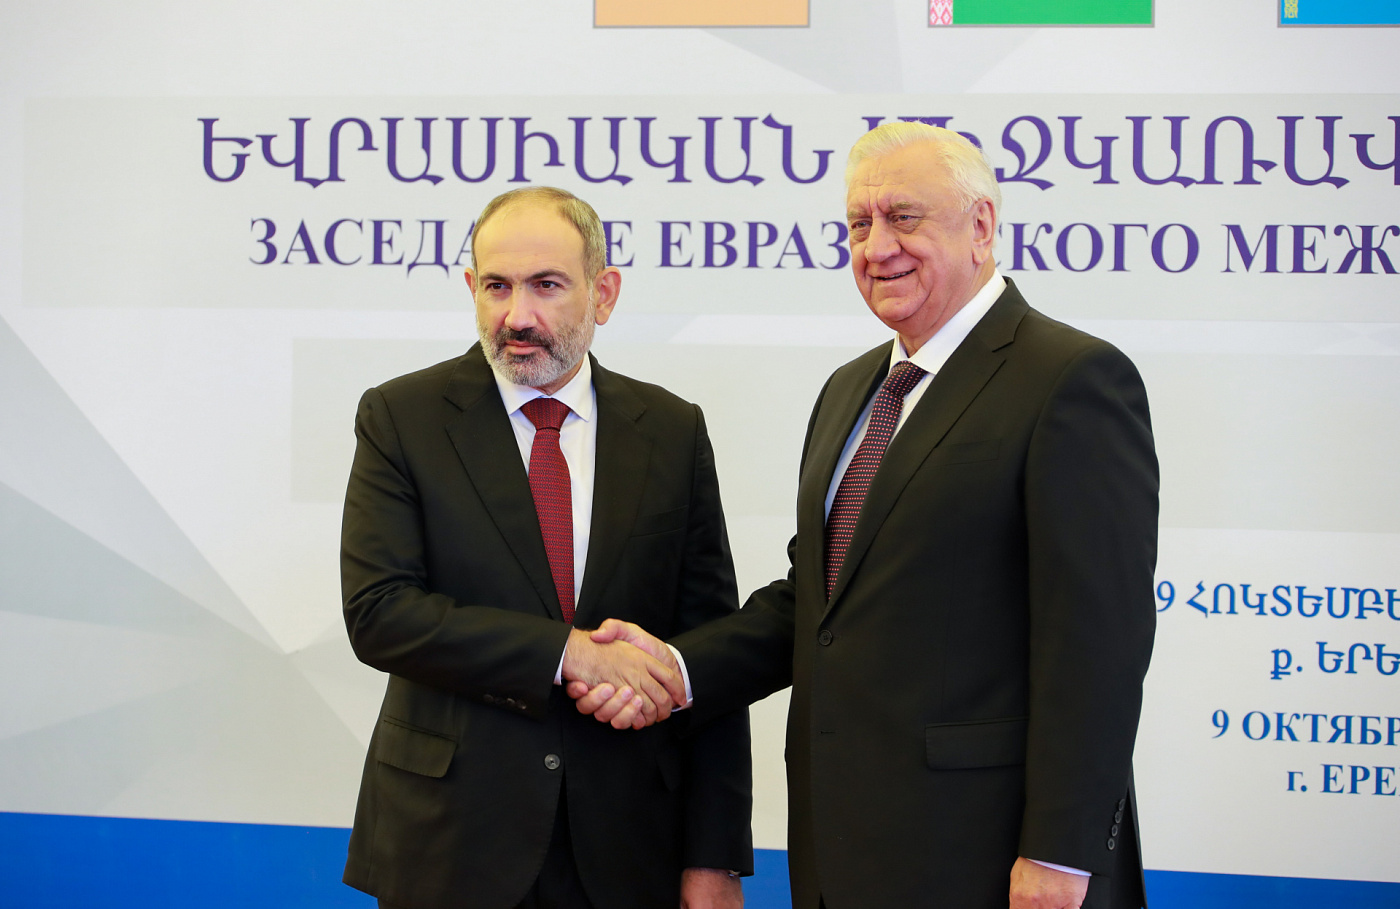 Мясникович поблагодарил Пашиняна за всемерную поддержку развития евразийской интеграции